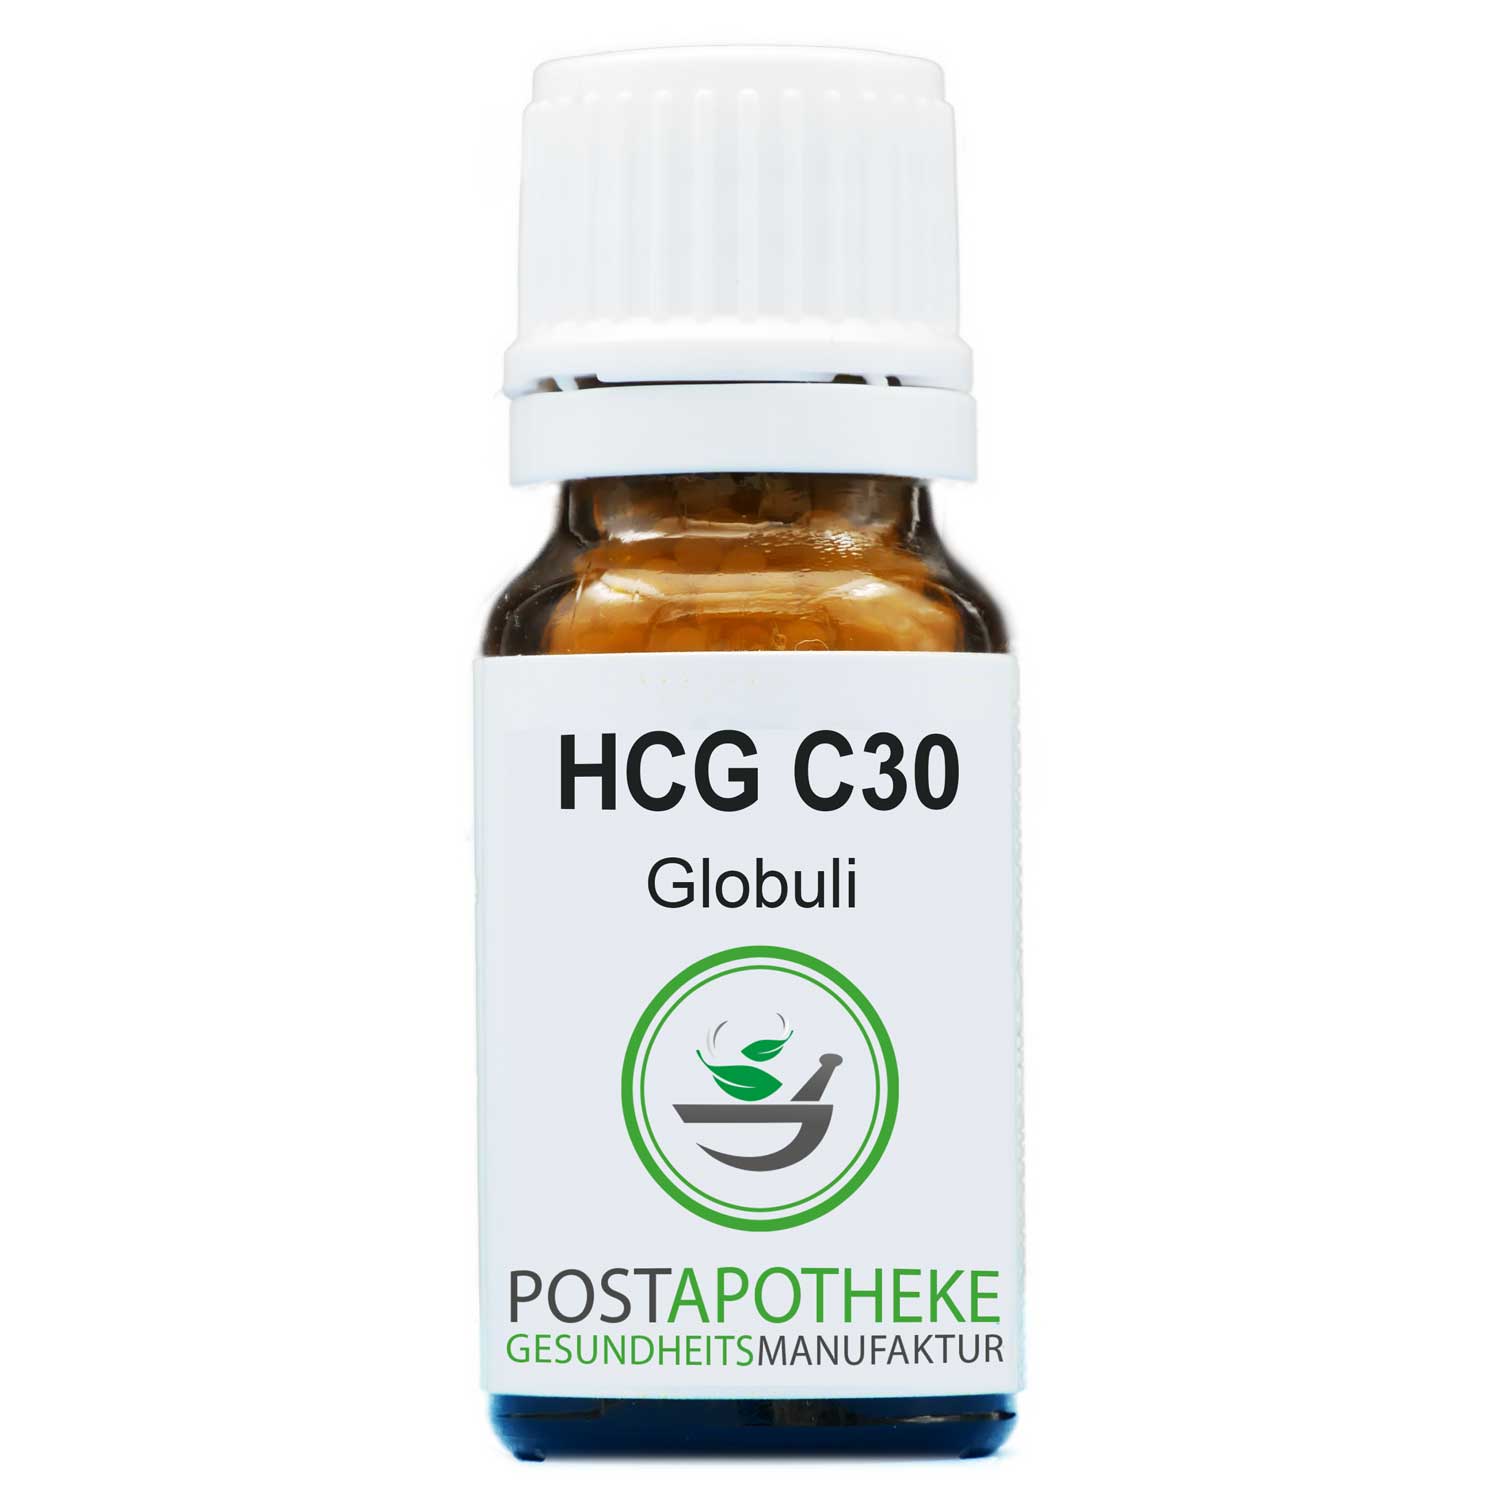 HCG-C30-globuli-post-apotheke-homoeopathisch-top-qualitaet-guenstig-kaufen